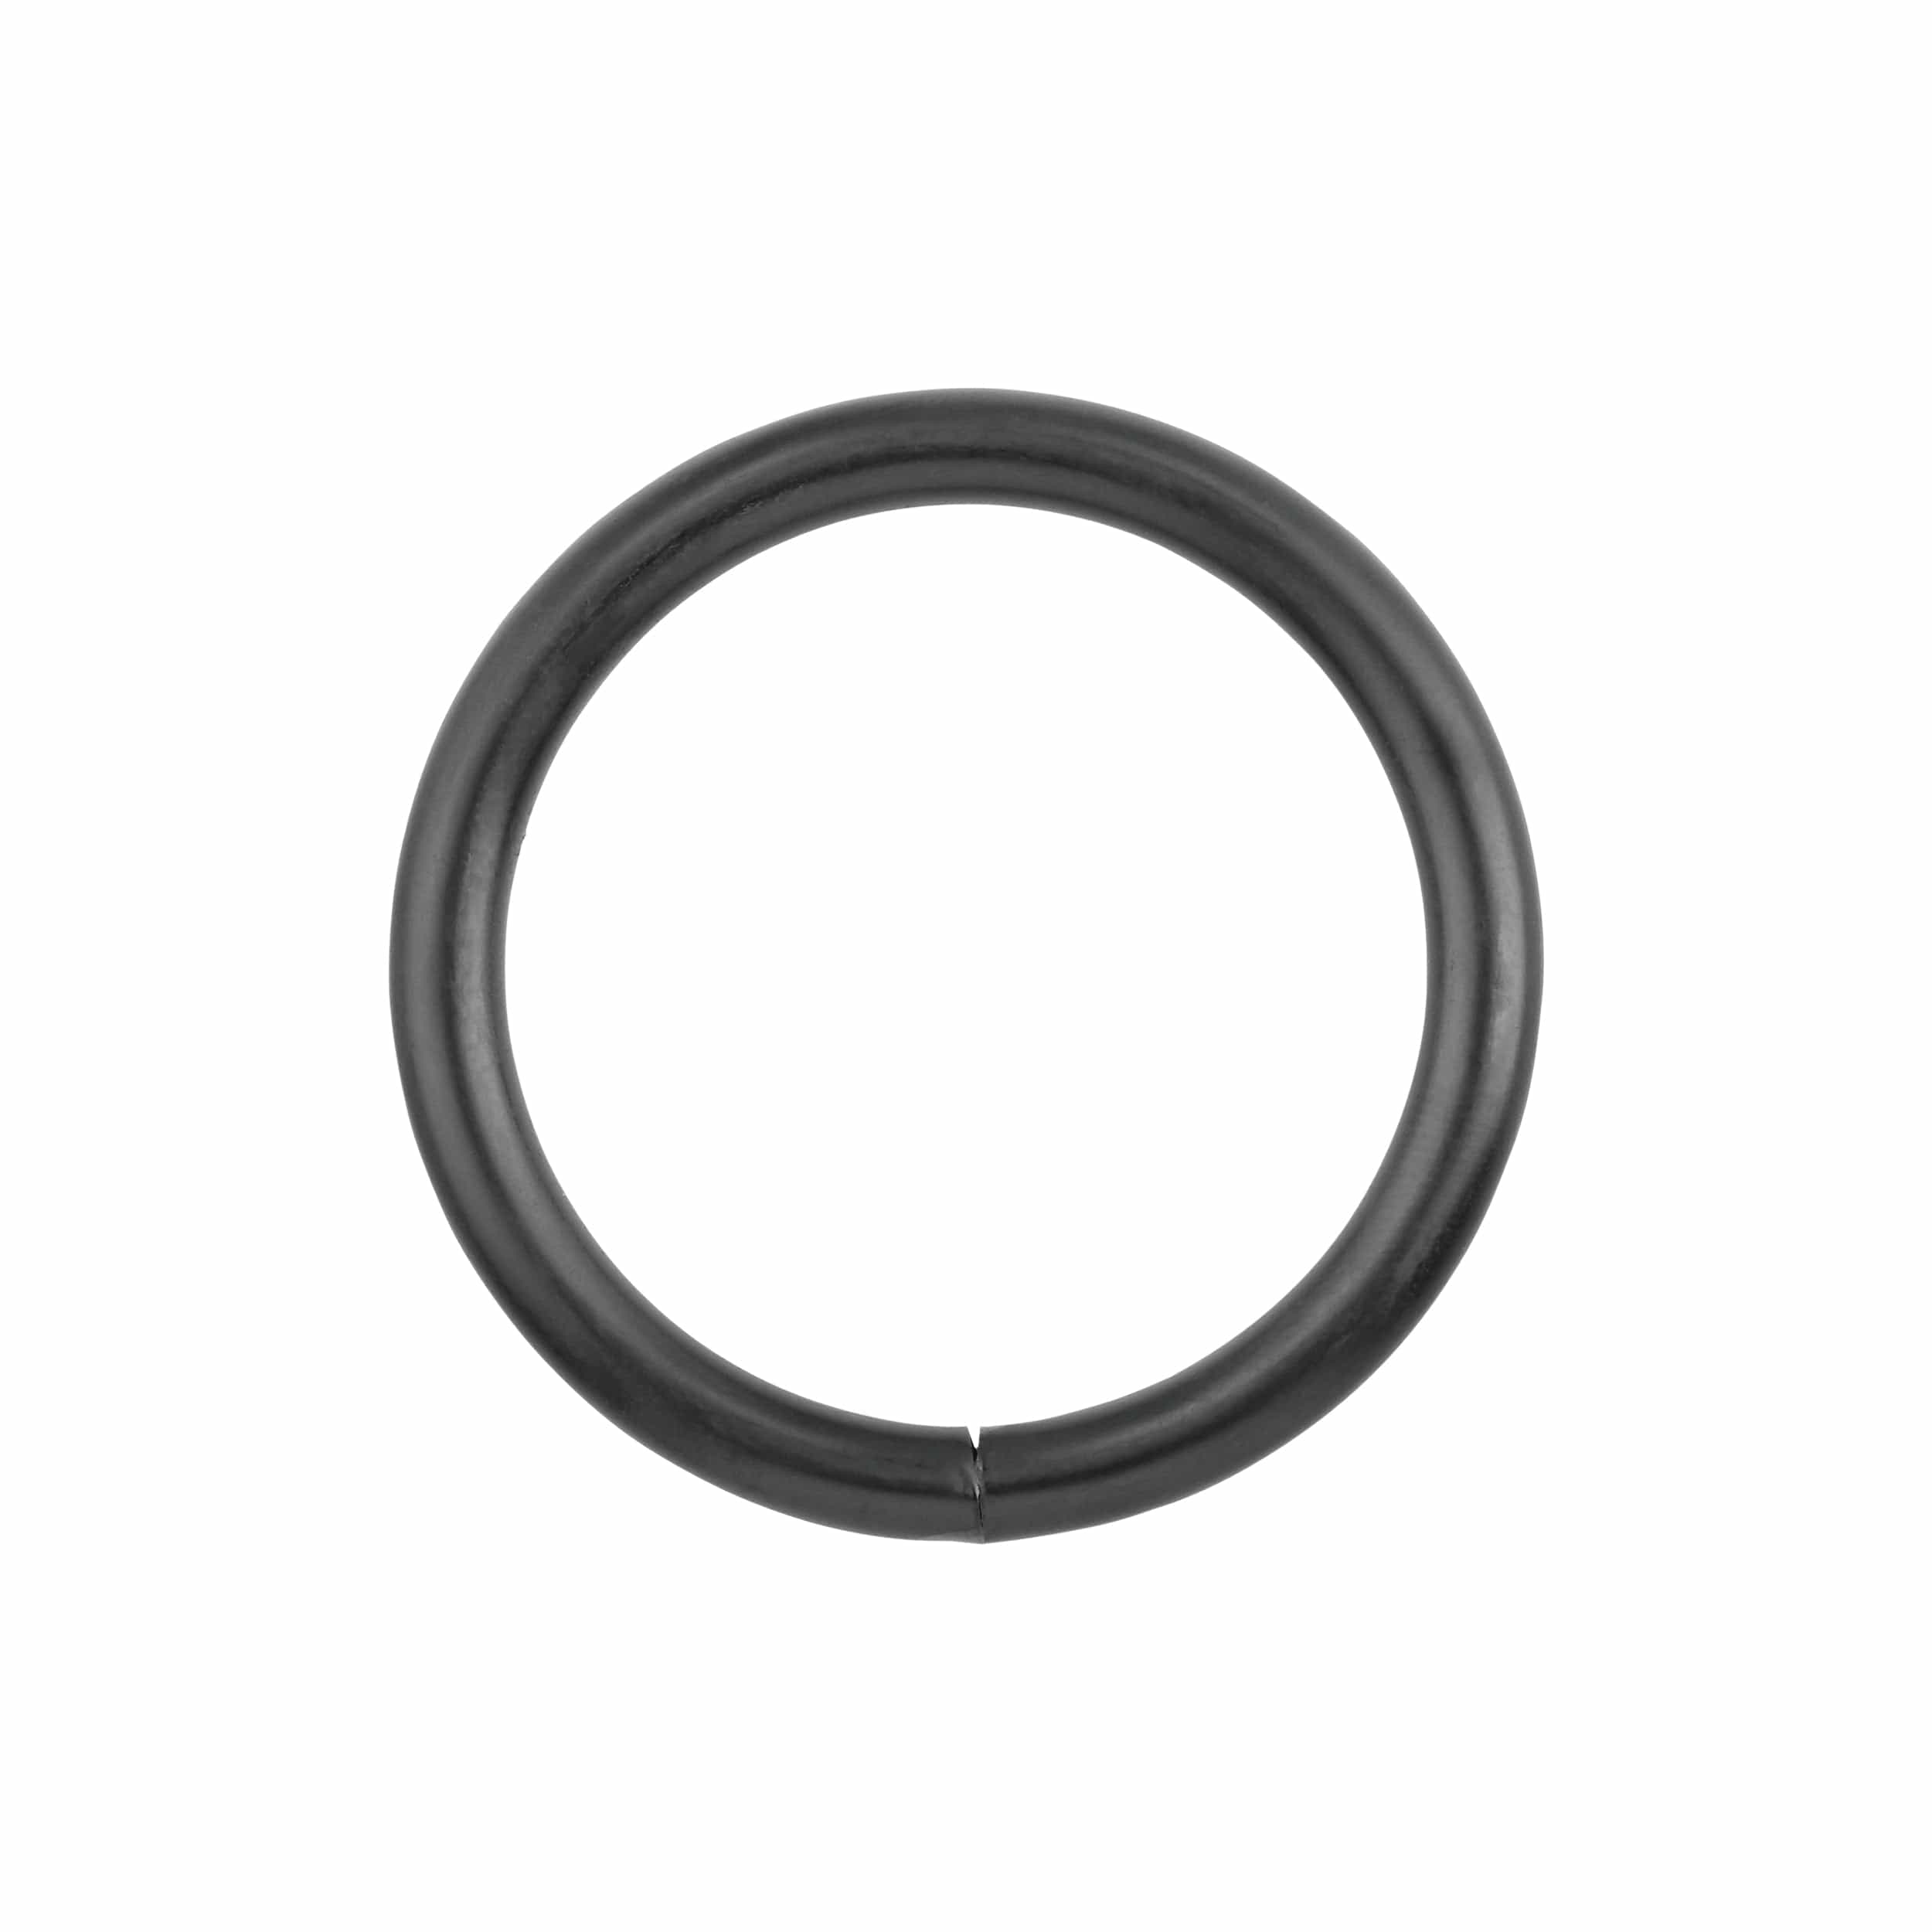 Ohio Travel Bag Rings & Slides 2" Black, Welded Round Ring, Steel, #P-2681 P-2681